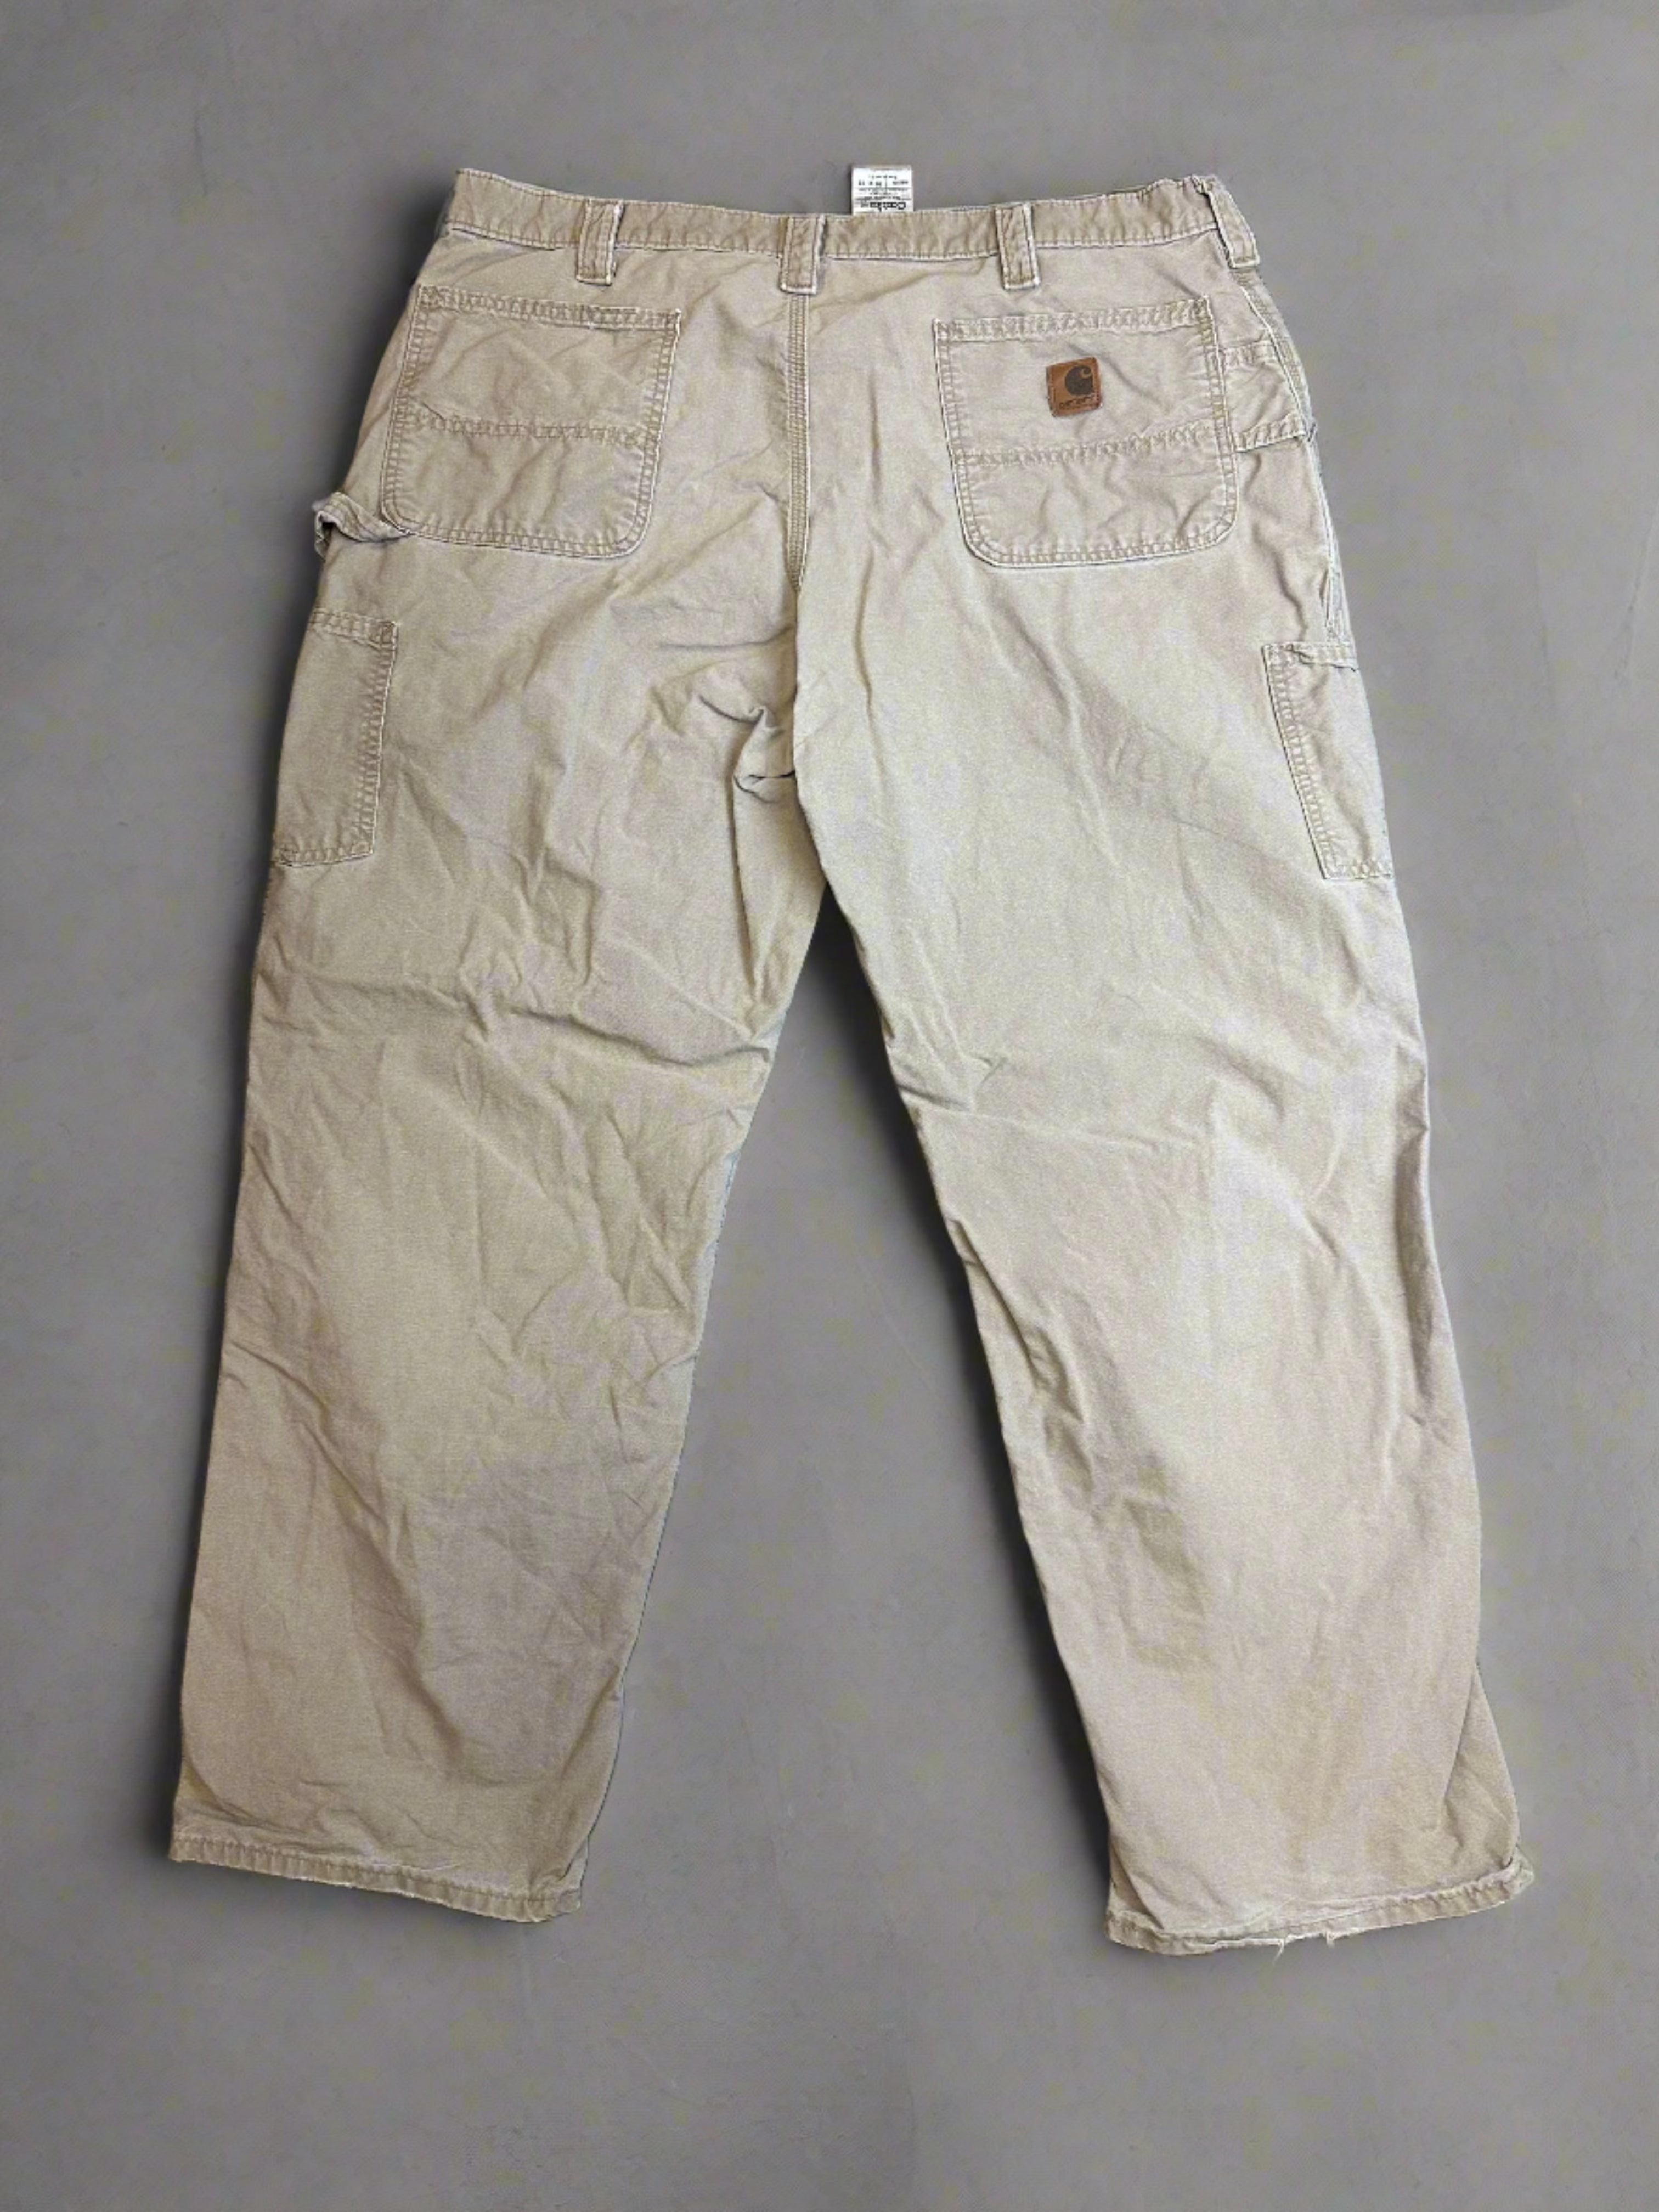 Vintage Carhartt Pants - size 40x32